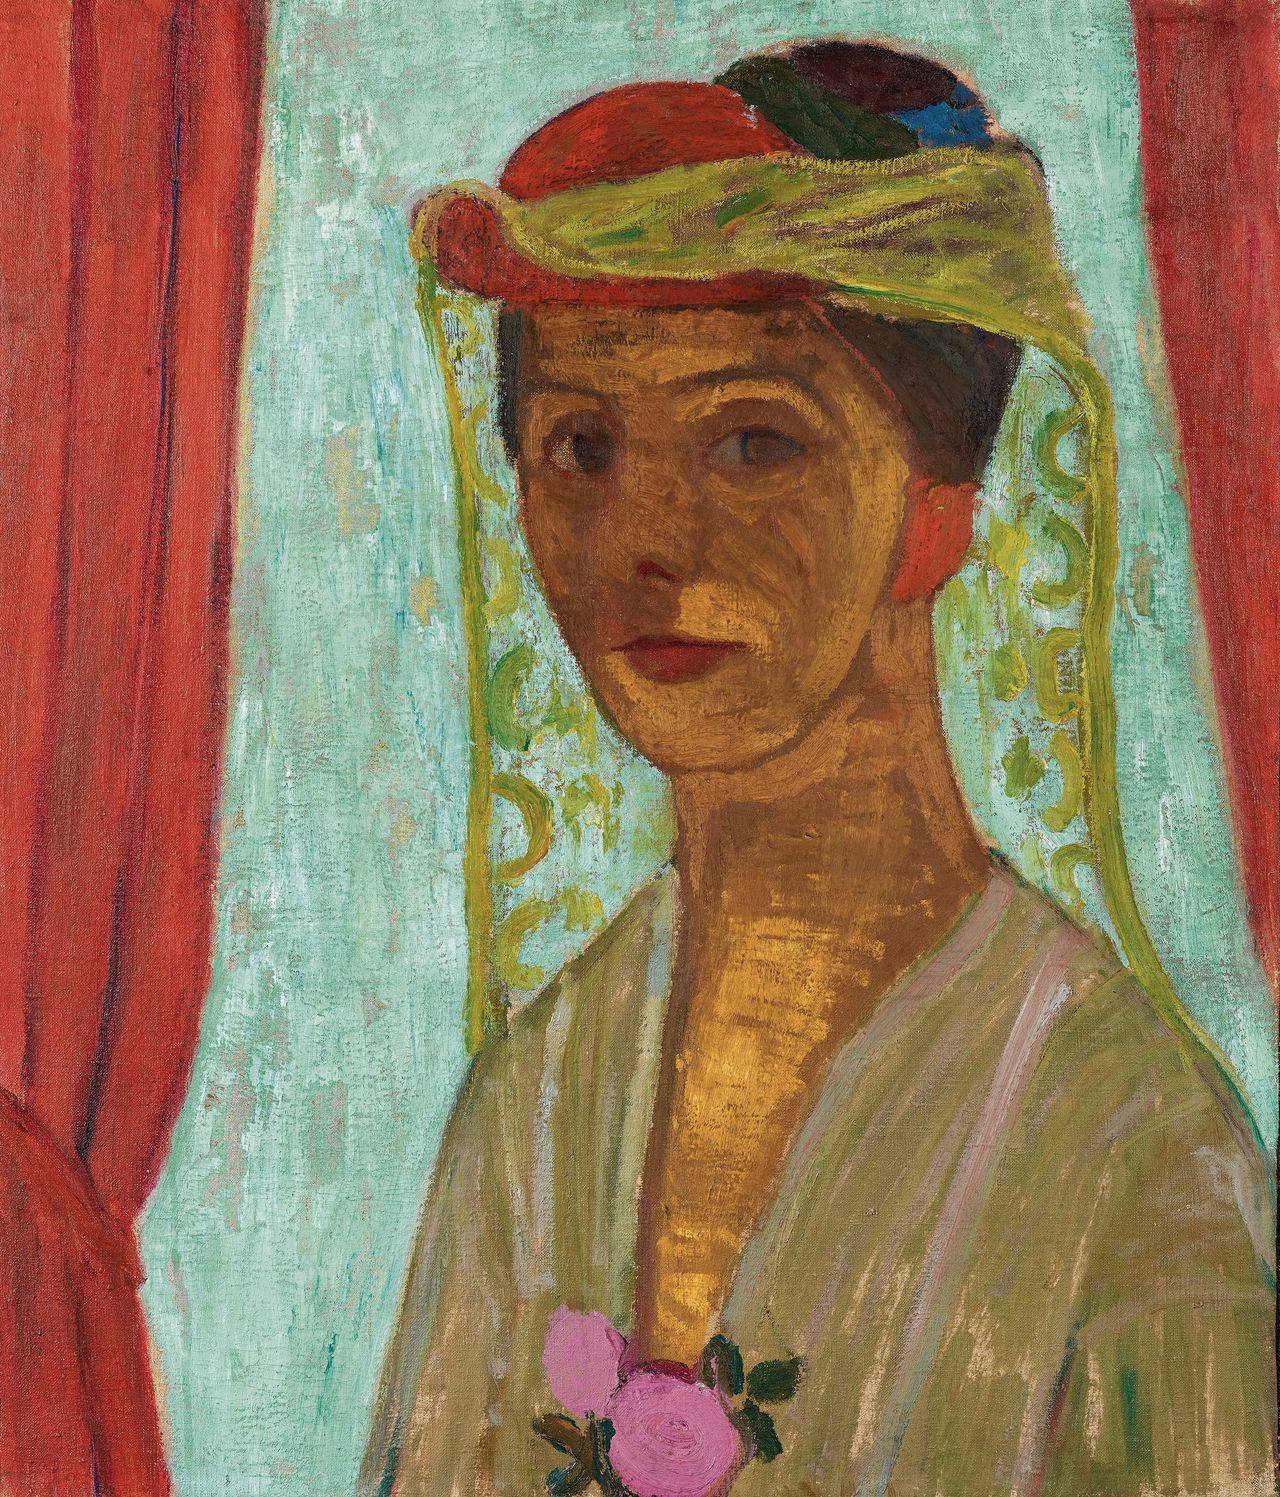 Paula Modersohn-Becker, Zelfportret met hoed en sluier, 1906-1907. (67,5 x 57,5 cm).